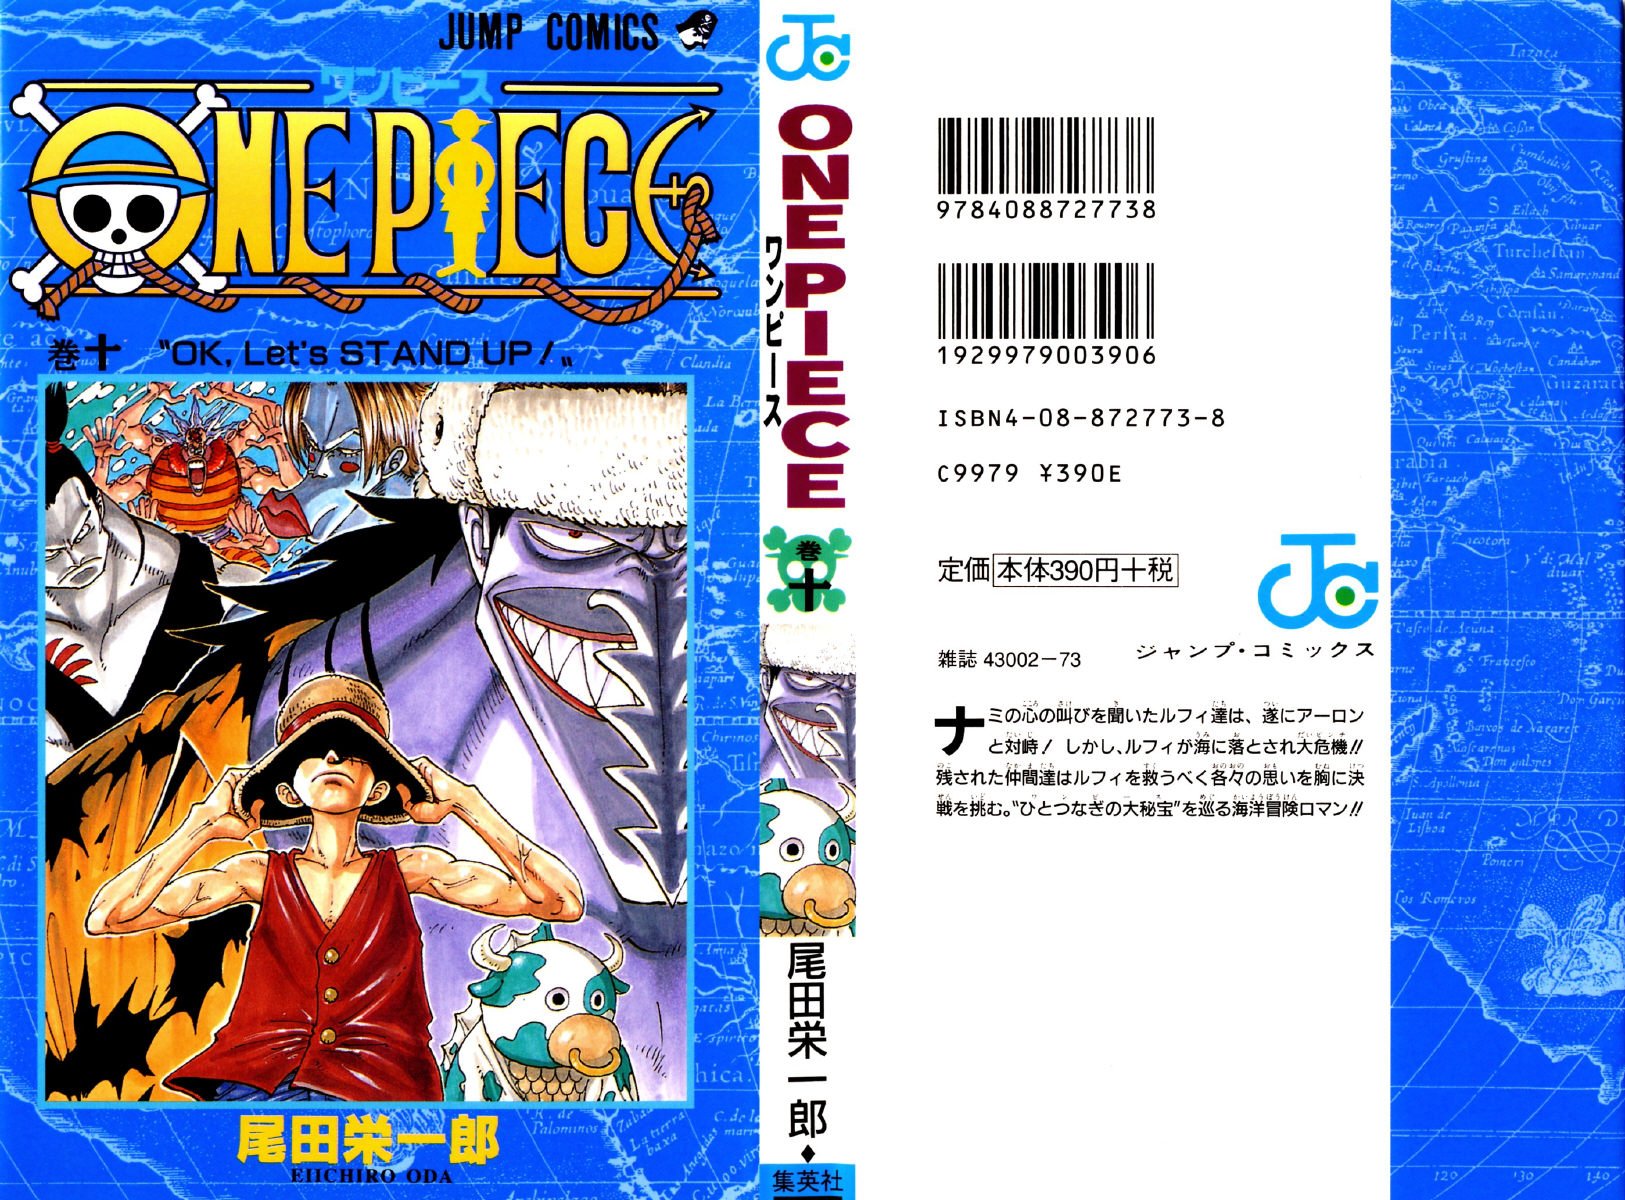 公式 ワンピースコミック無料配信 One Piece Comic Twitter